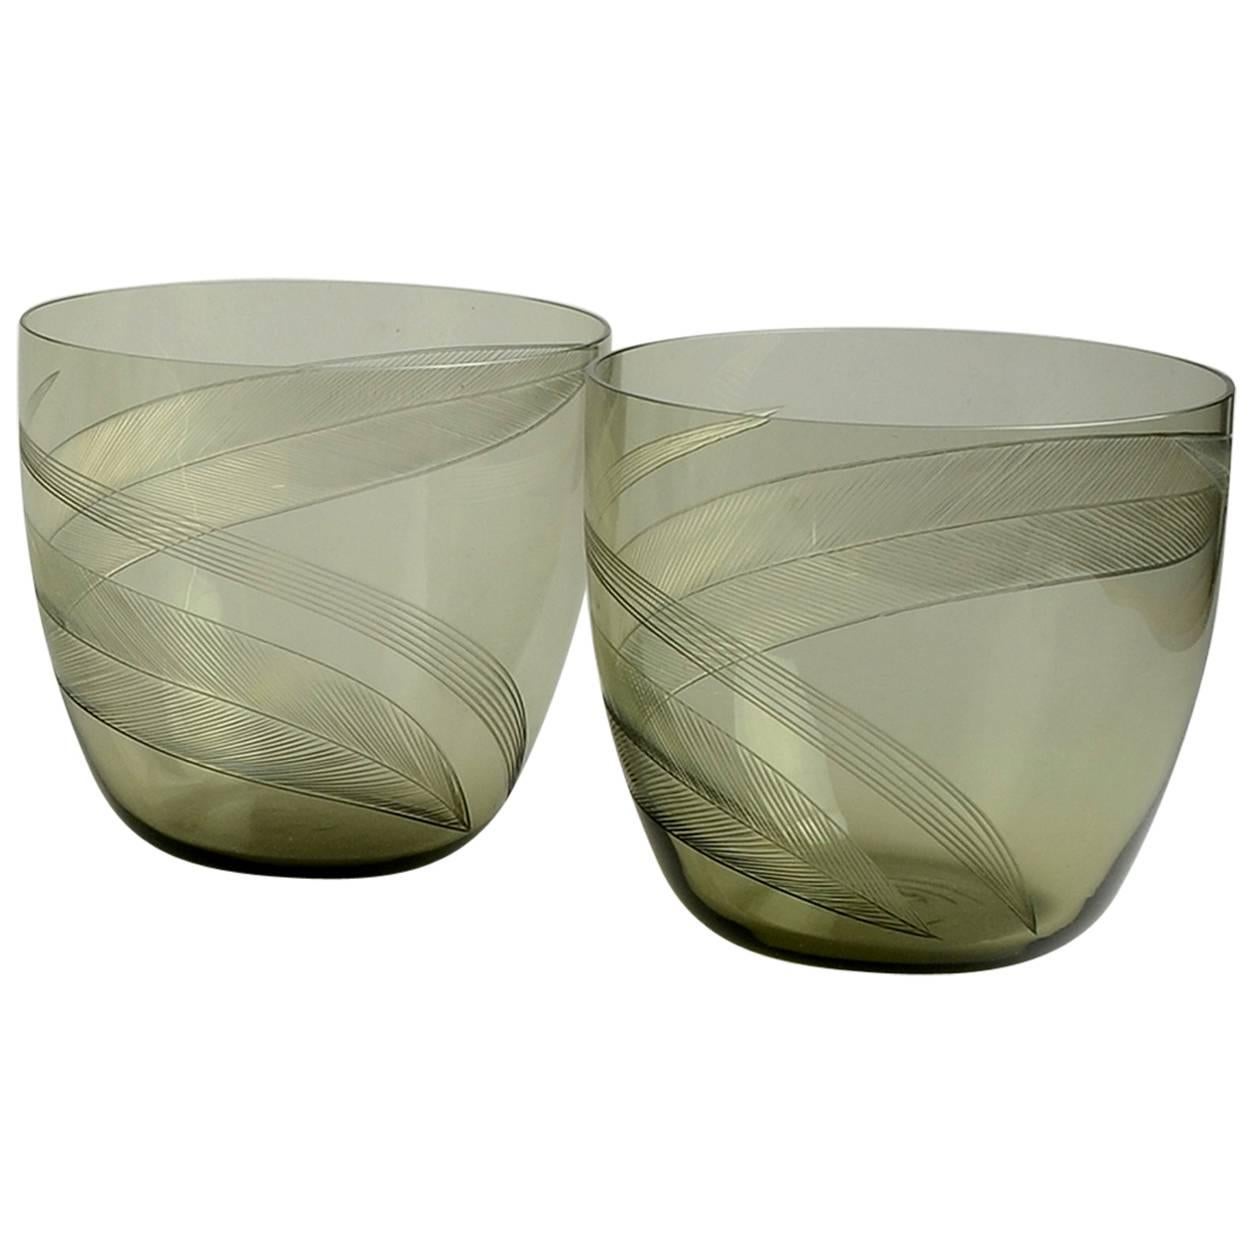 Pair of Engraved Vases in Smoke Colored Glass by Kaj Franck for Nottsjo For Sale